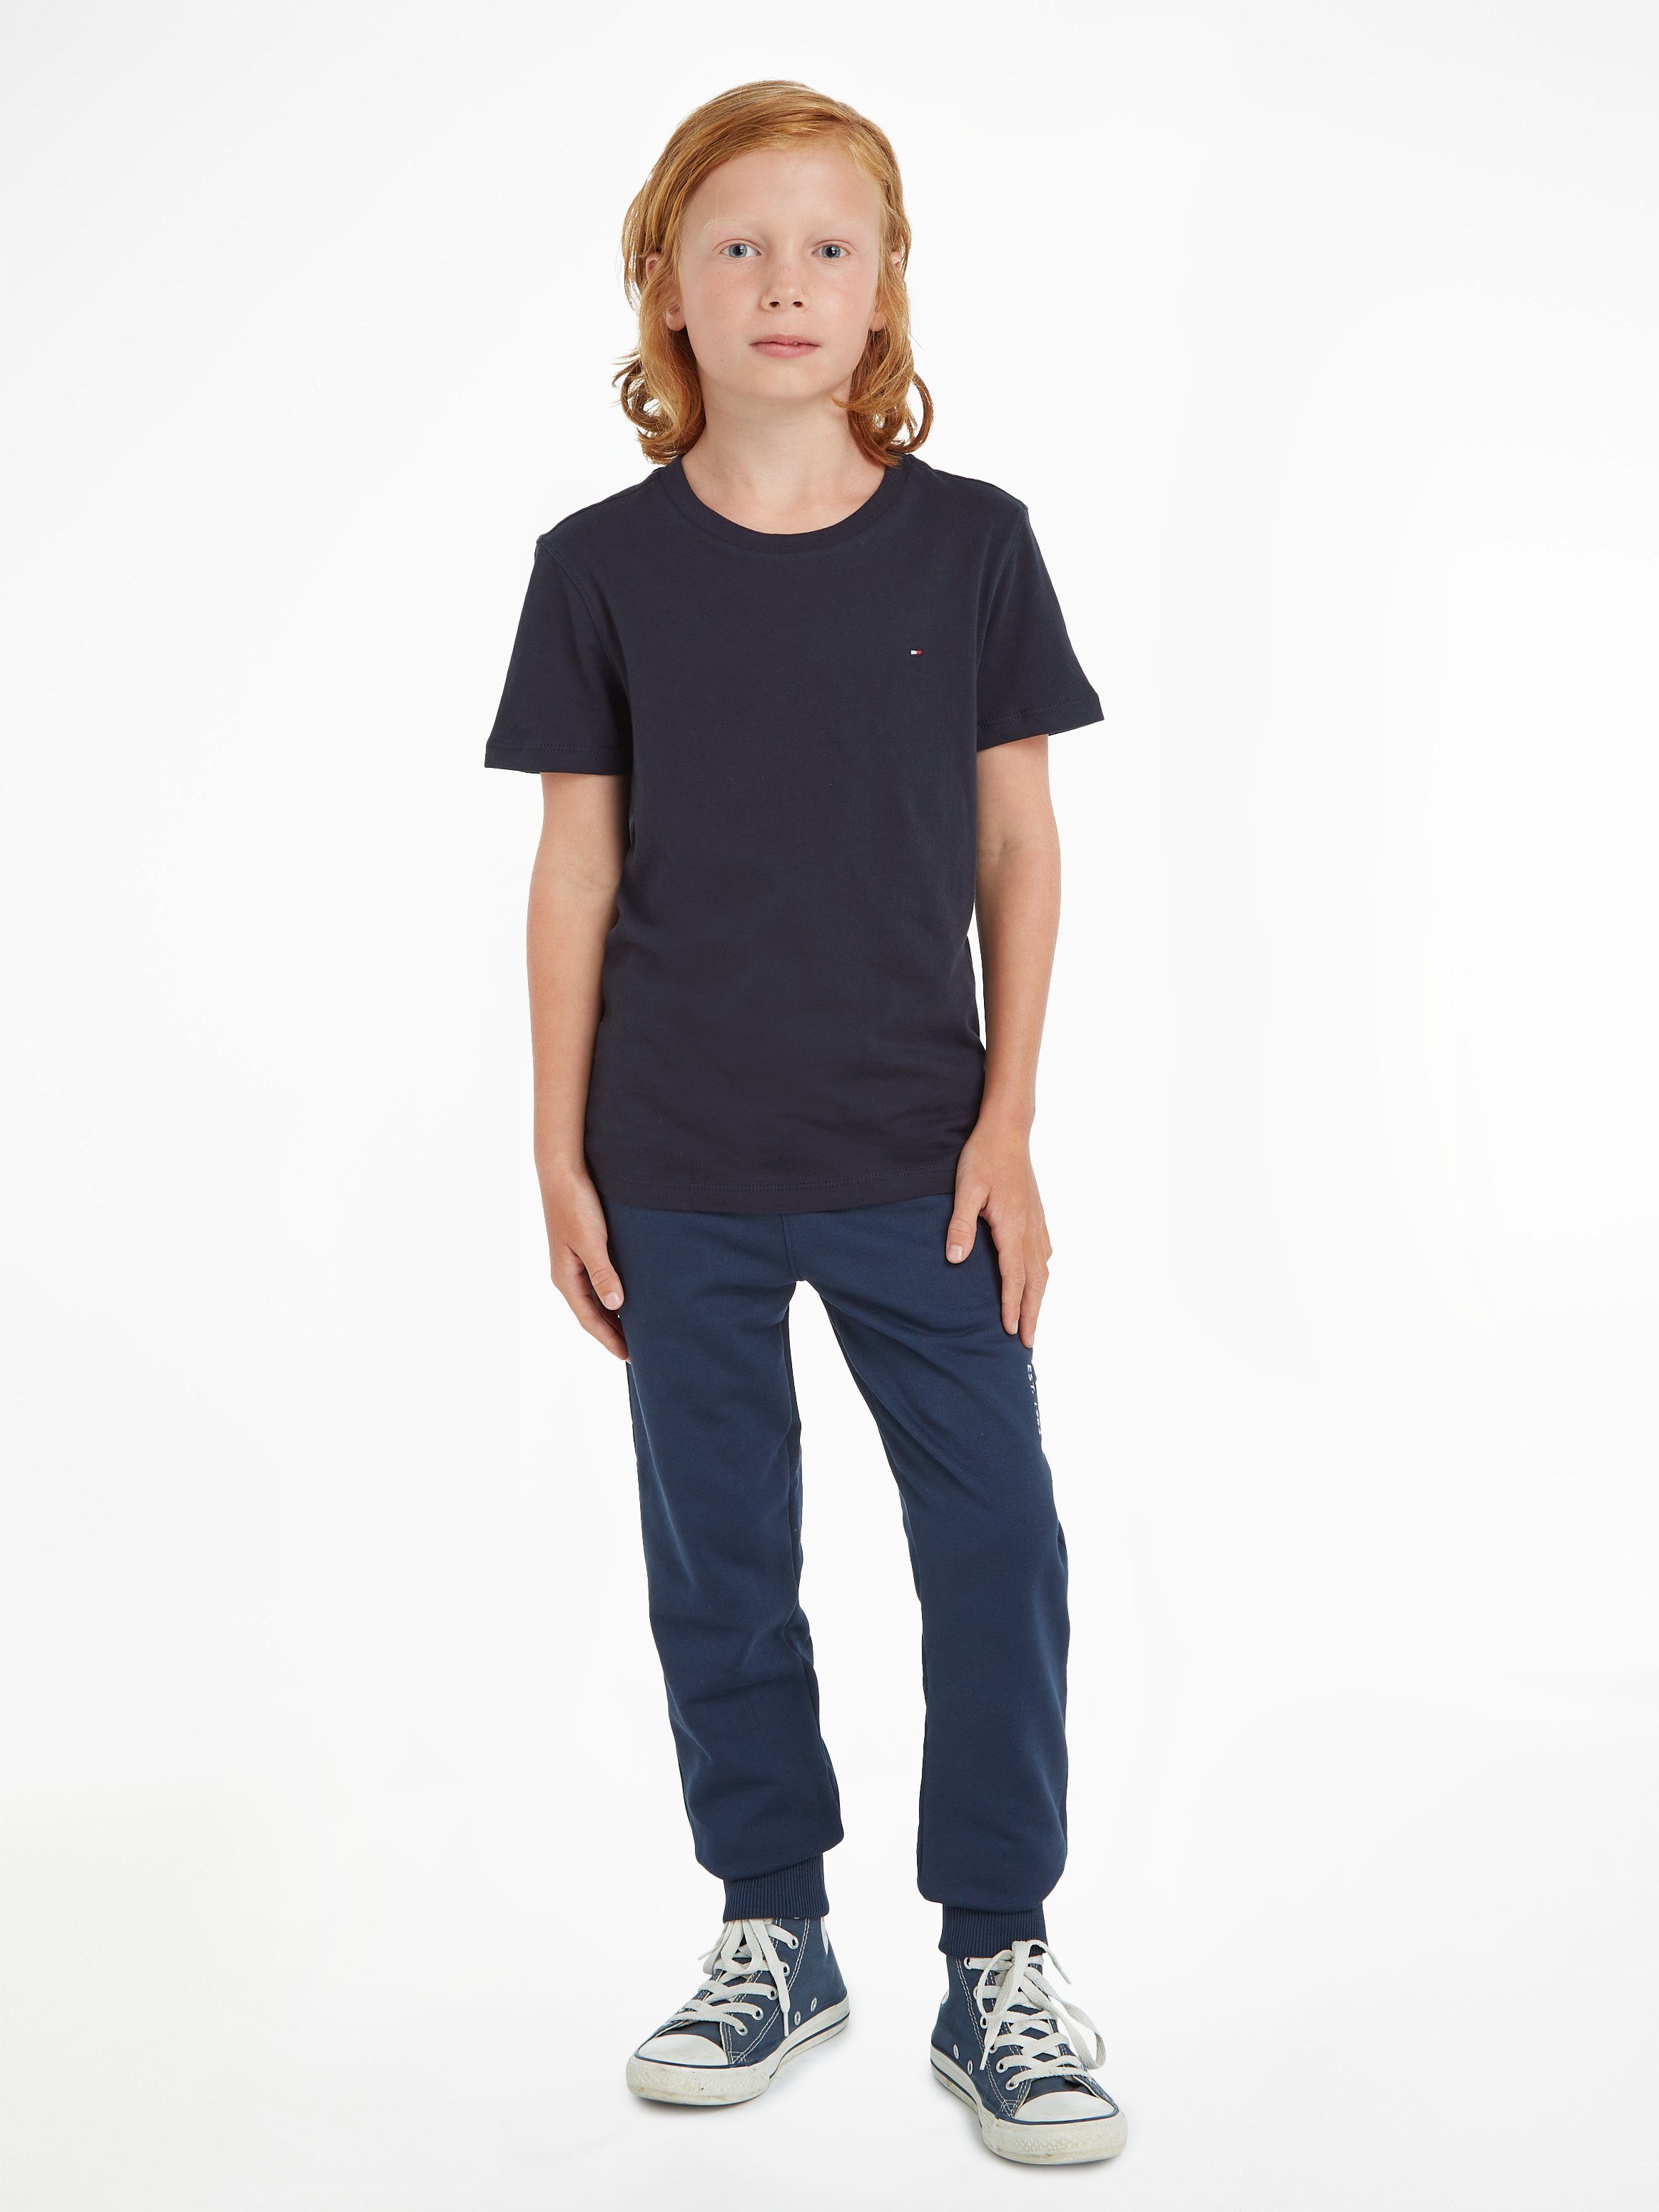 Tommy Hilfiger T-Shirt BOYS BASIC CN KNIT Kinder Kids Junior MiniMe,für  Jungen, Mit Stickerei und farbigem Label hinten am Ausschnitt